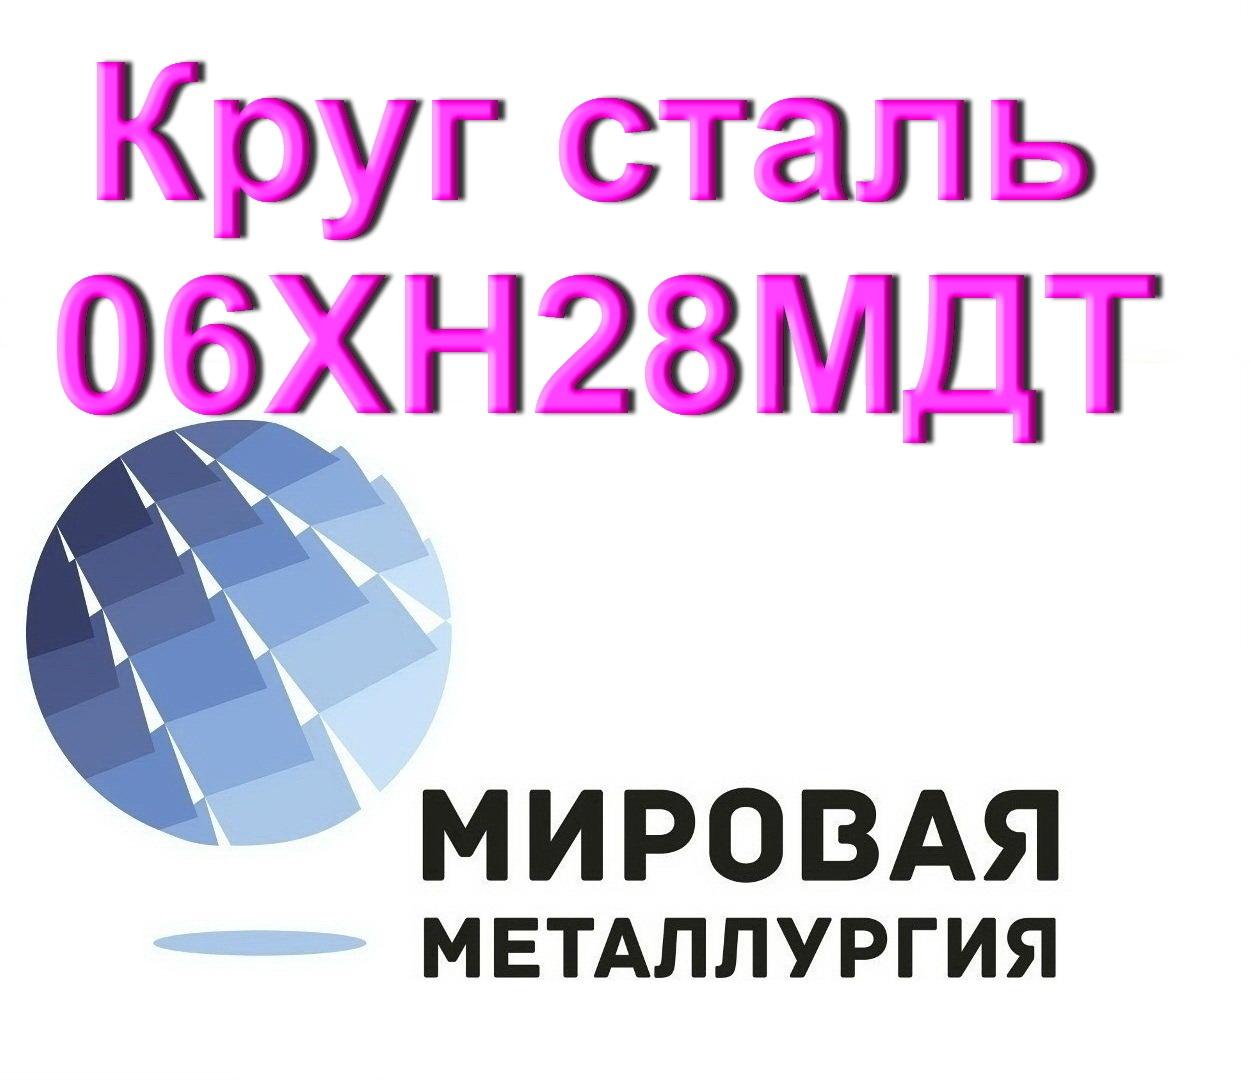 Круг сталь 06ХН28МДТ, Севастополь